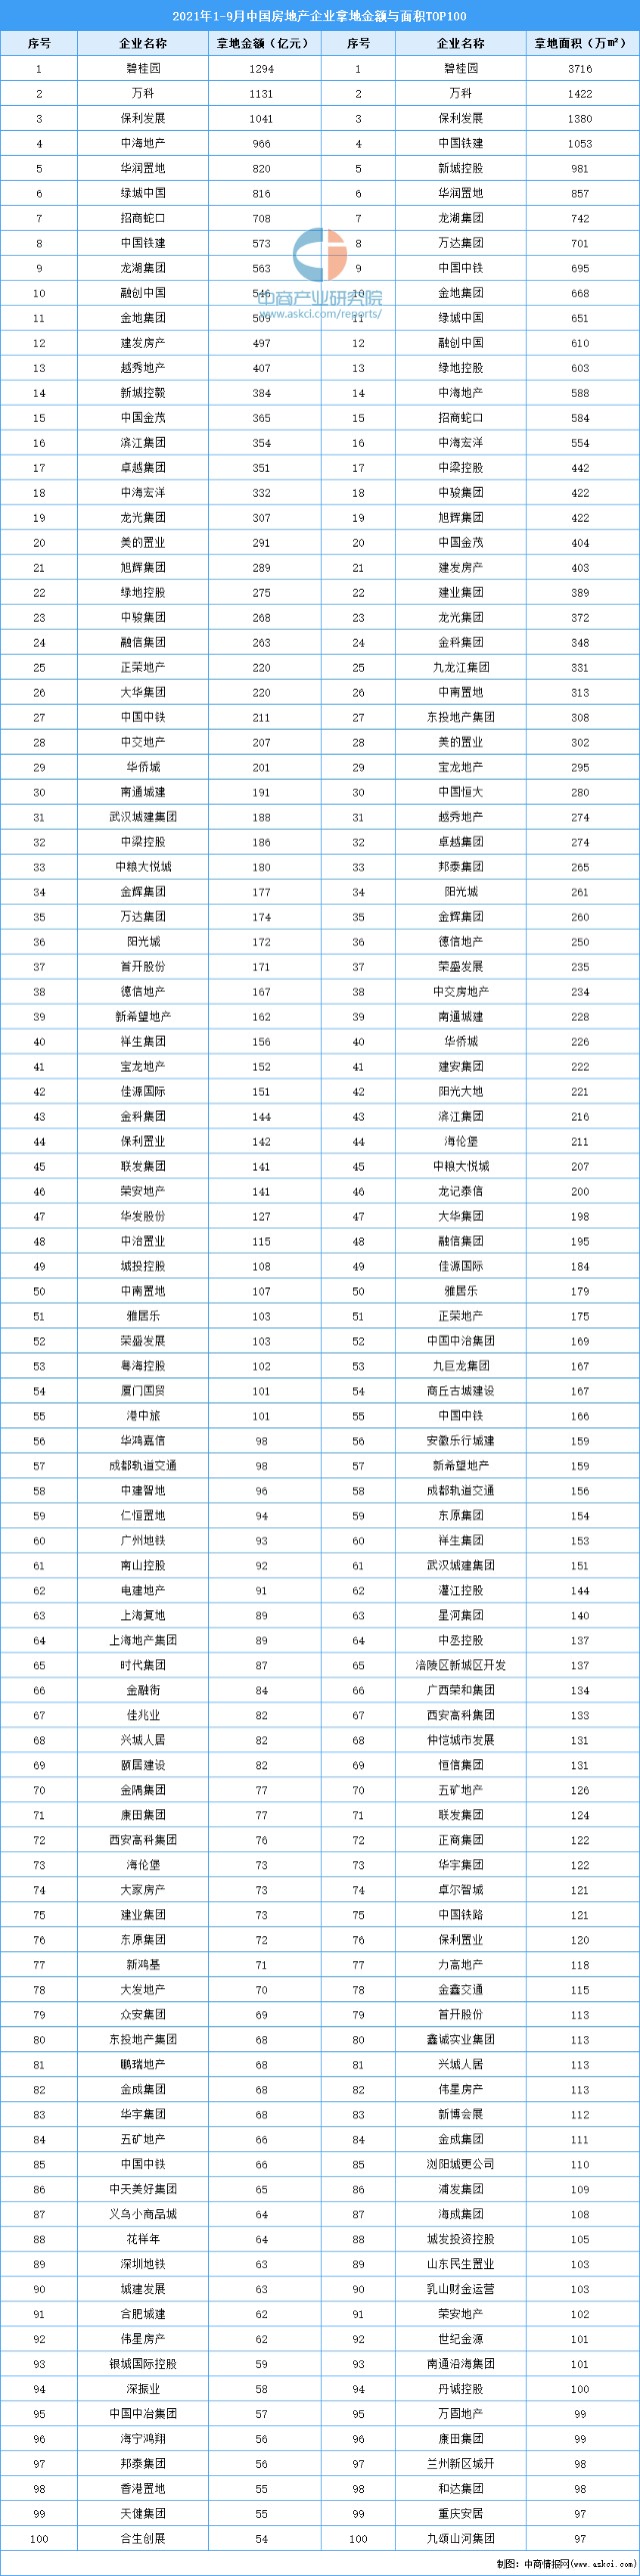 2021年19月中国房地产企业拿地金额与面积排行榜top100